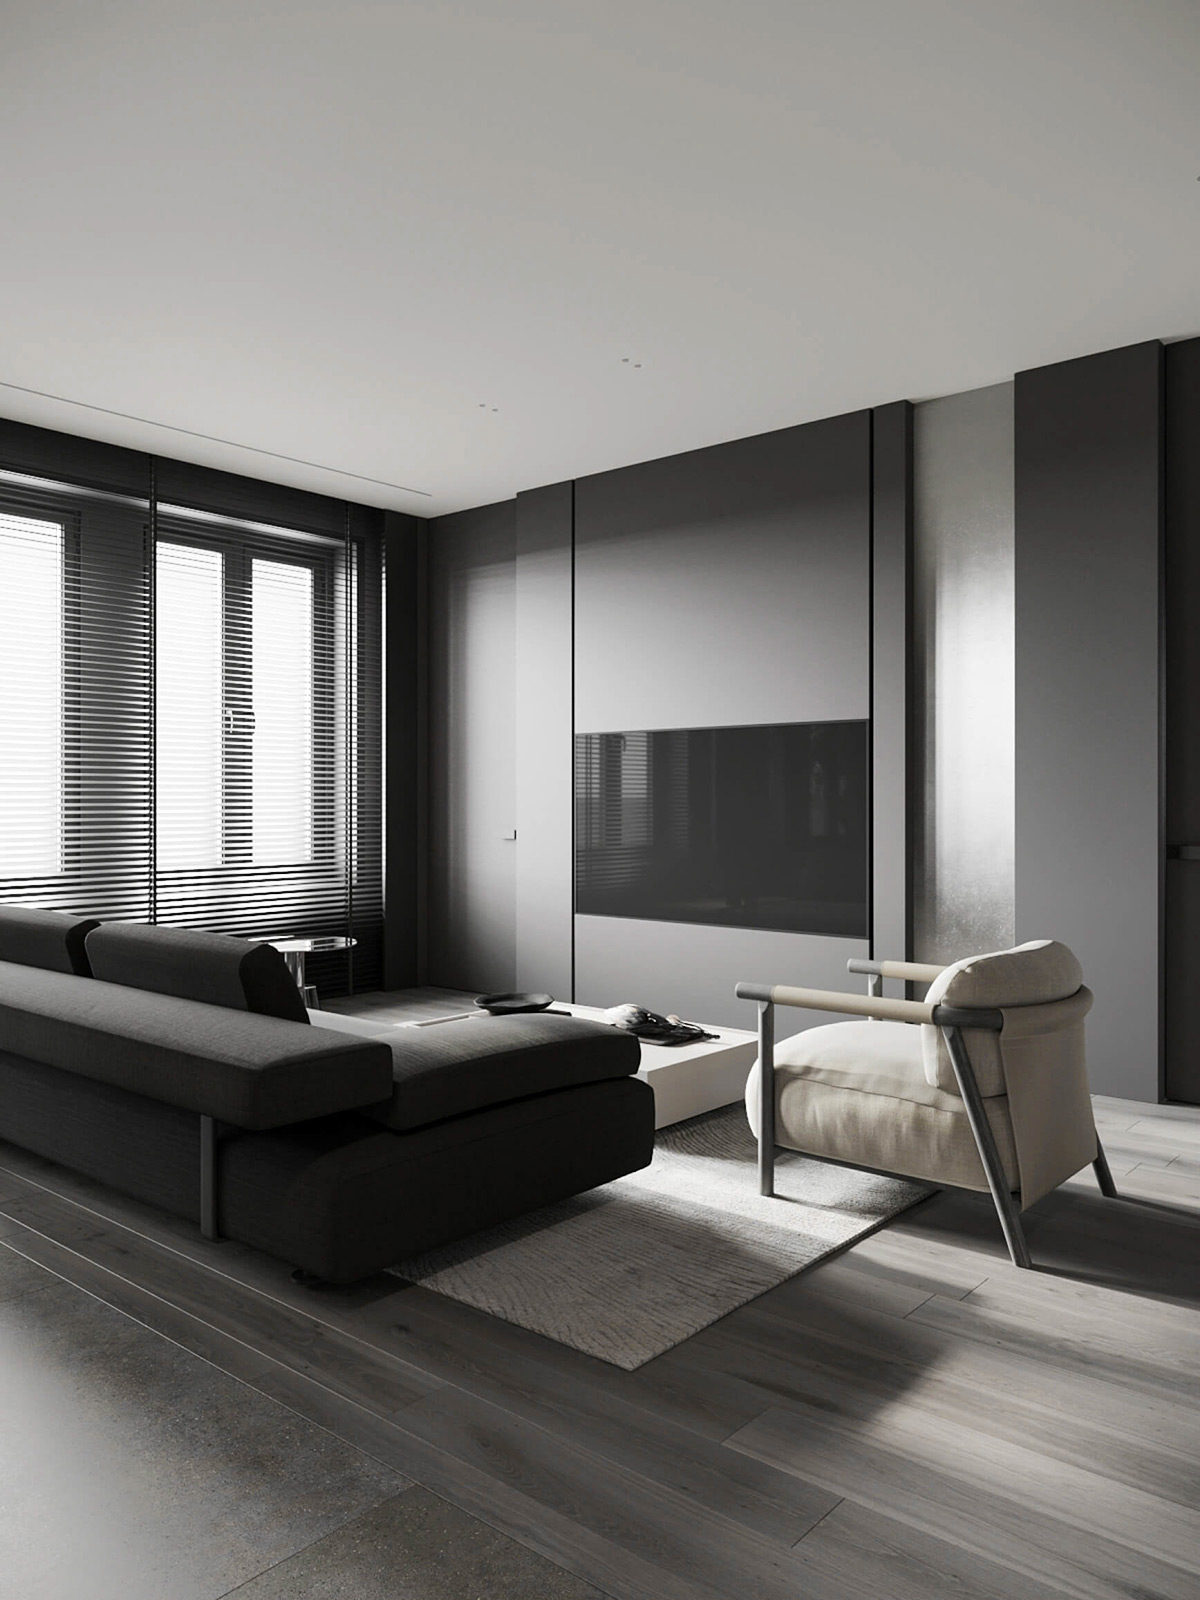 sophisticated gray scale monochromatic interior design 17